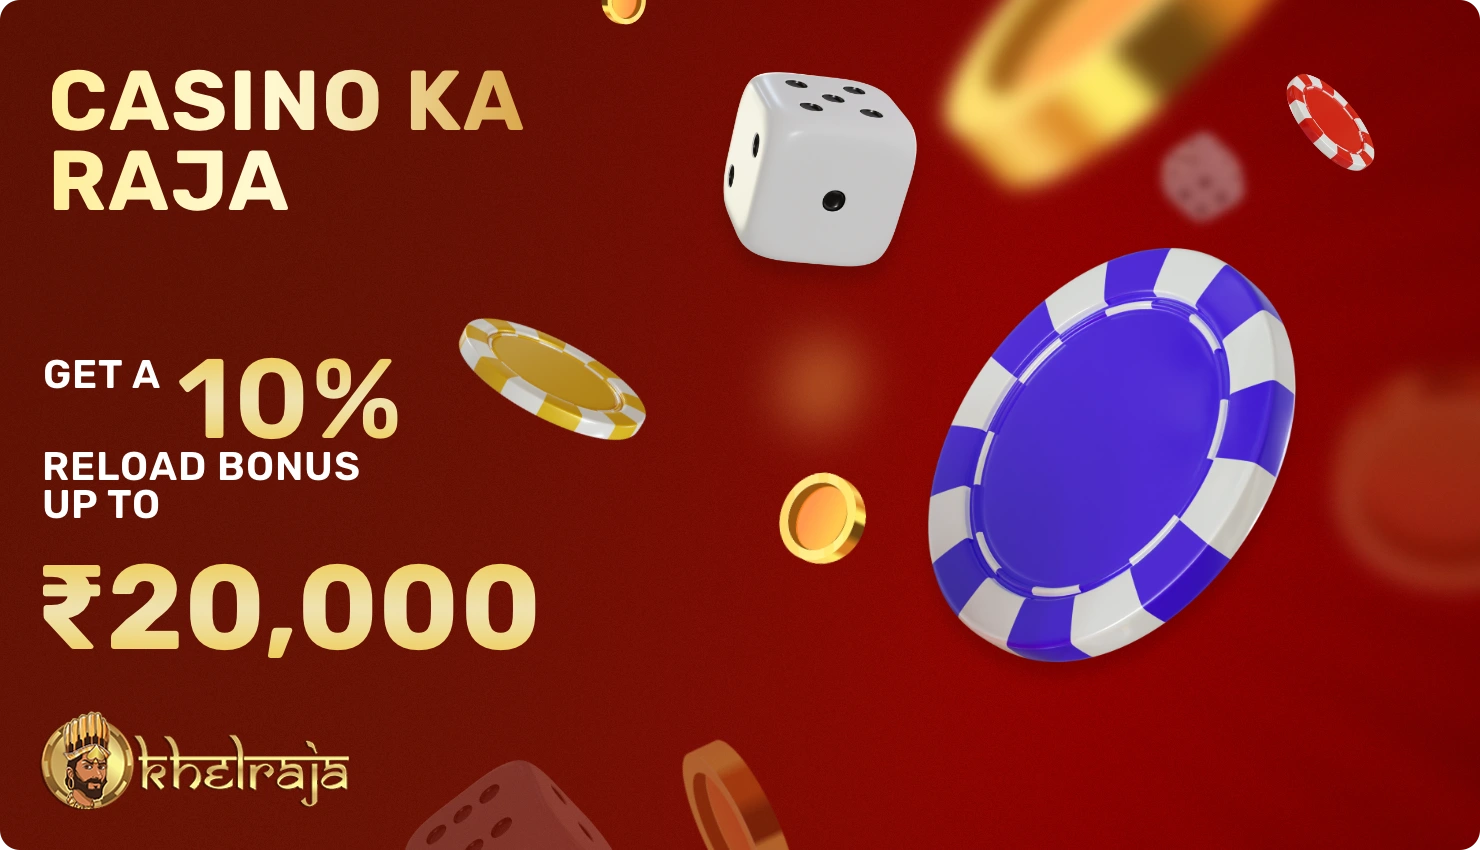 Casino Ka Raja - special reload bonus for Khelraja casino users